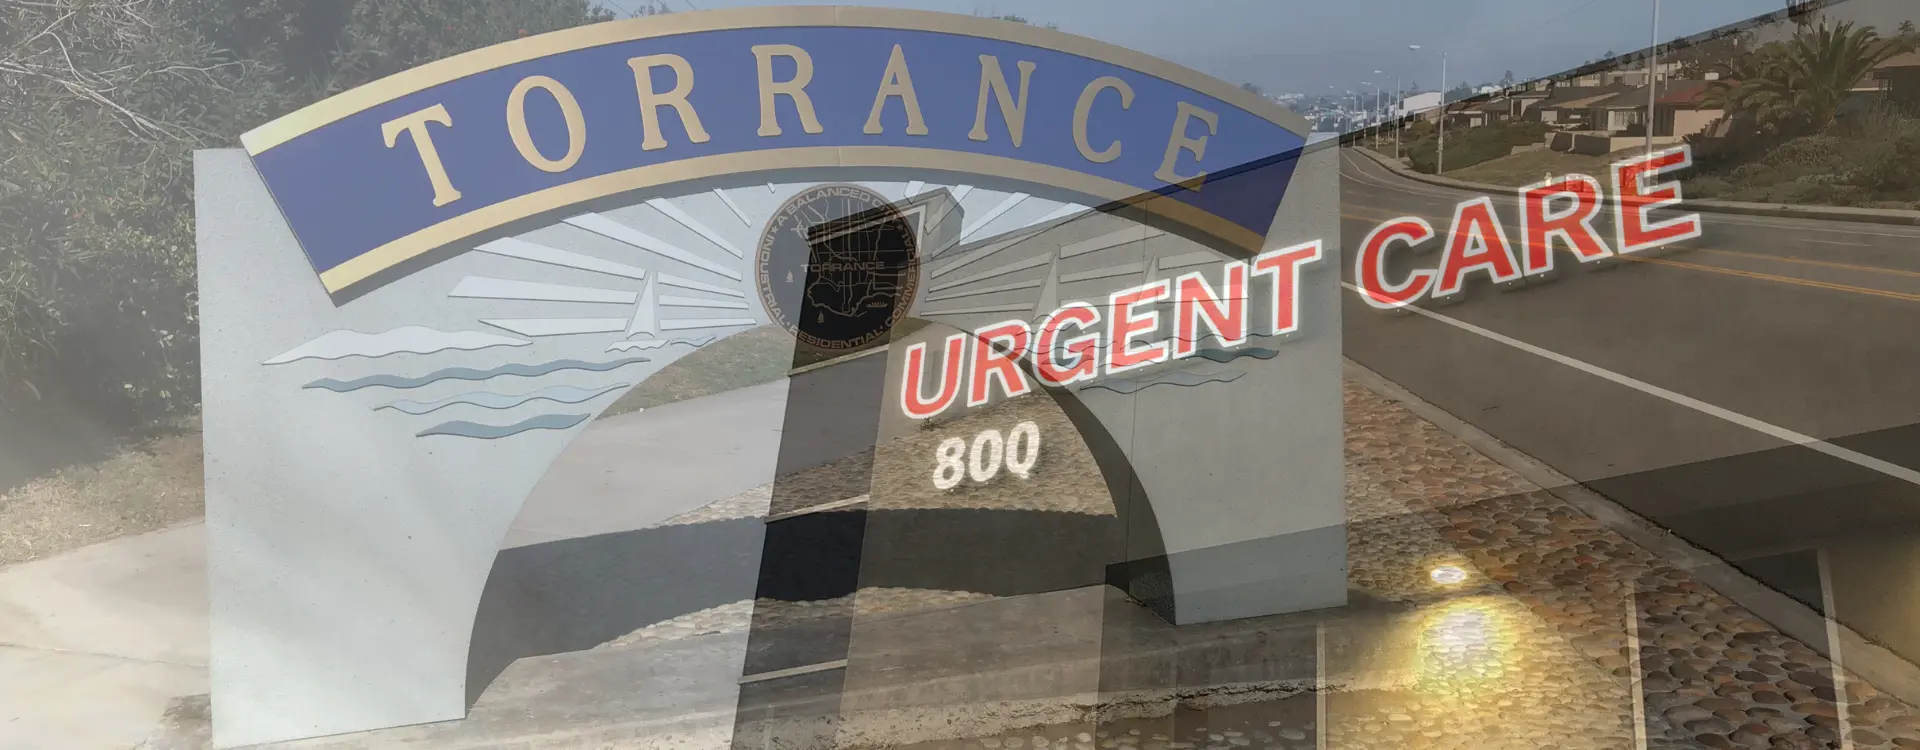 torrance urgent care